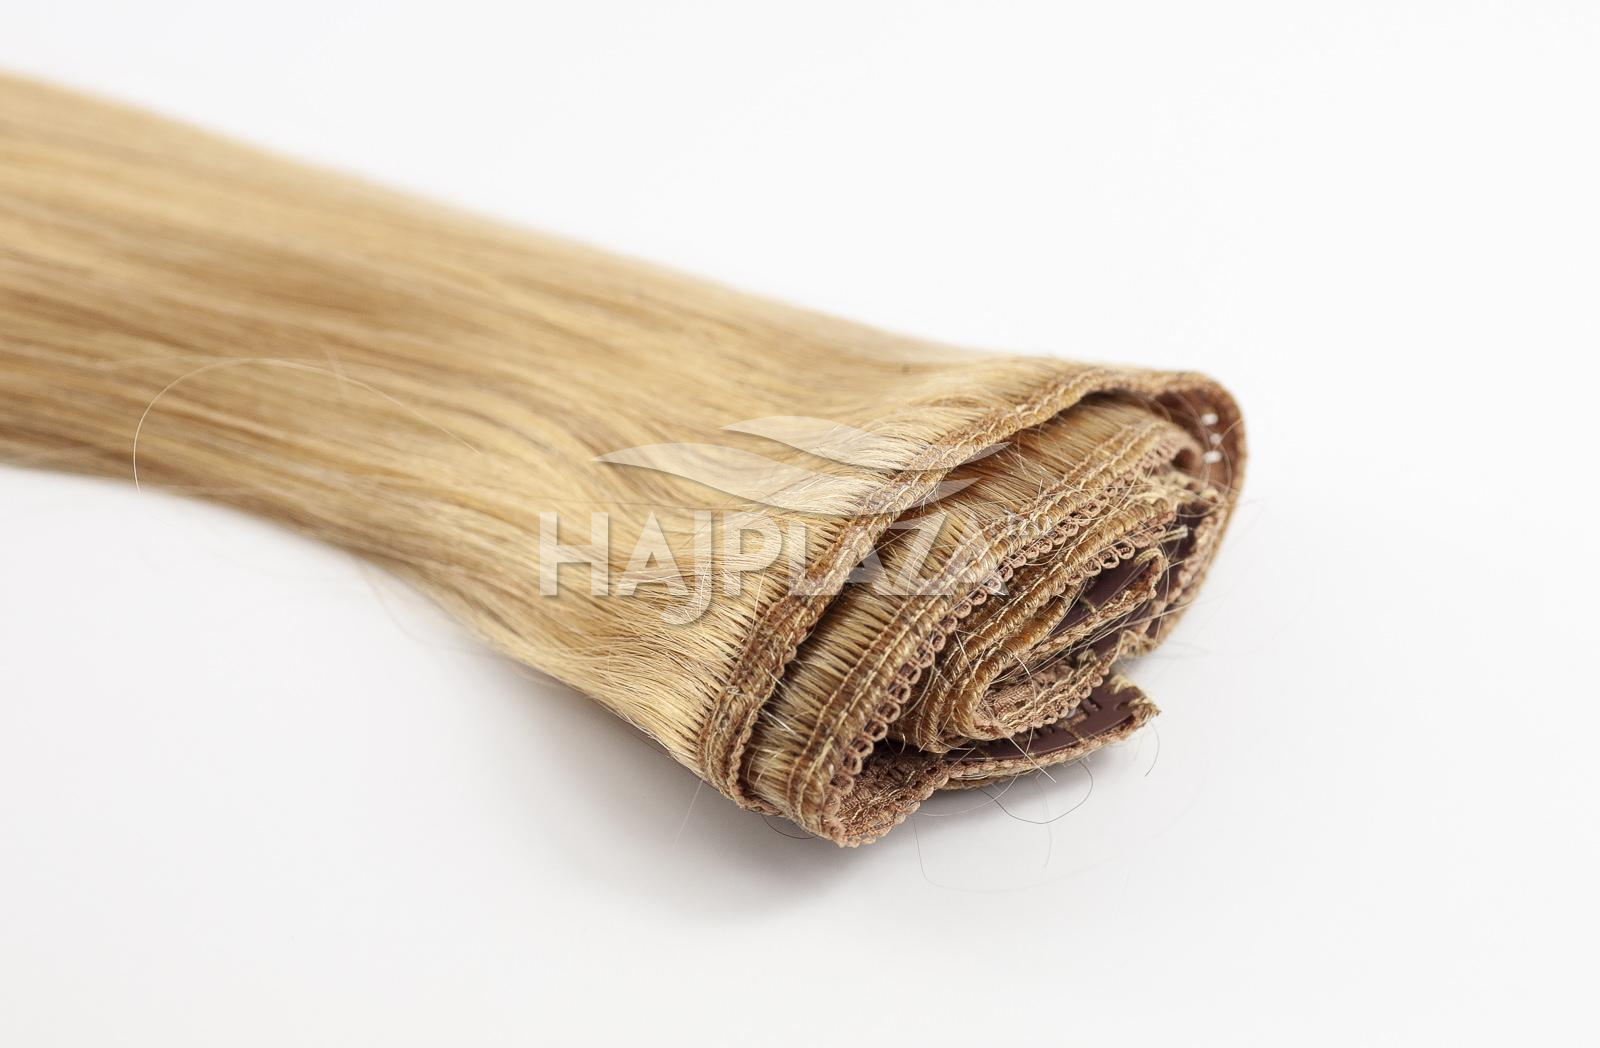  Festett középszőke  csatos haj - 50-55 cm